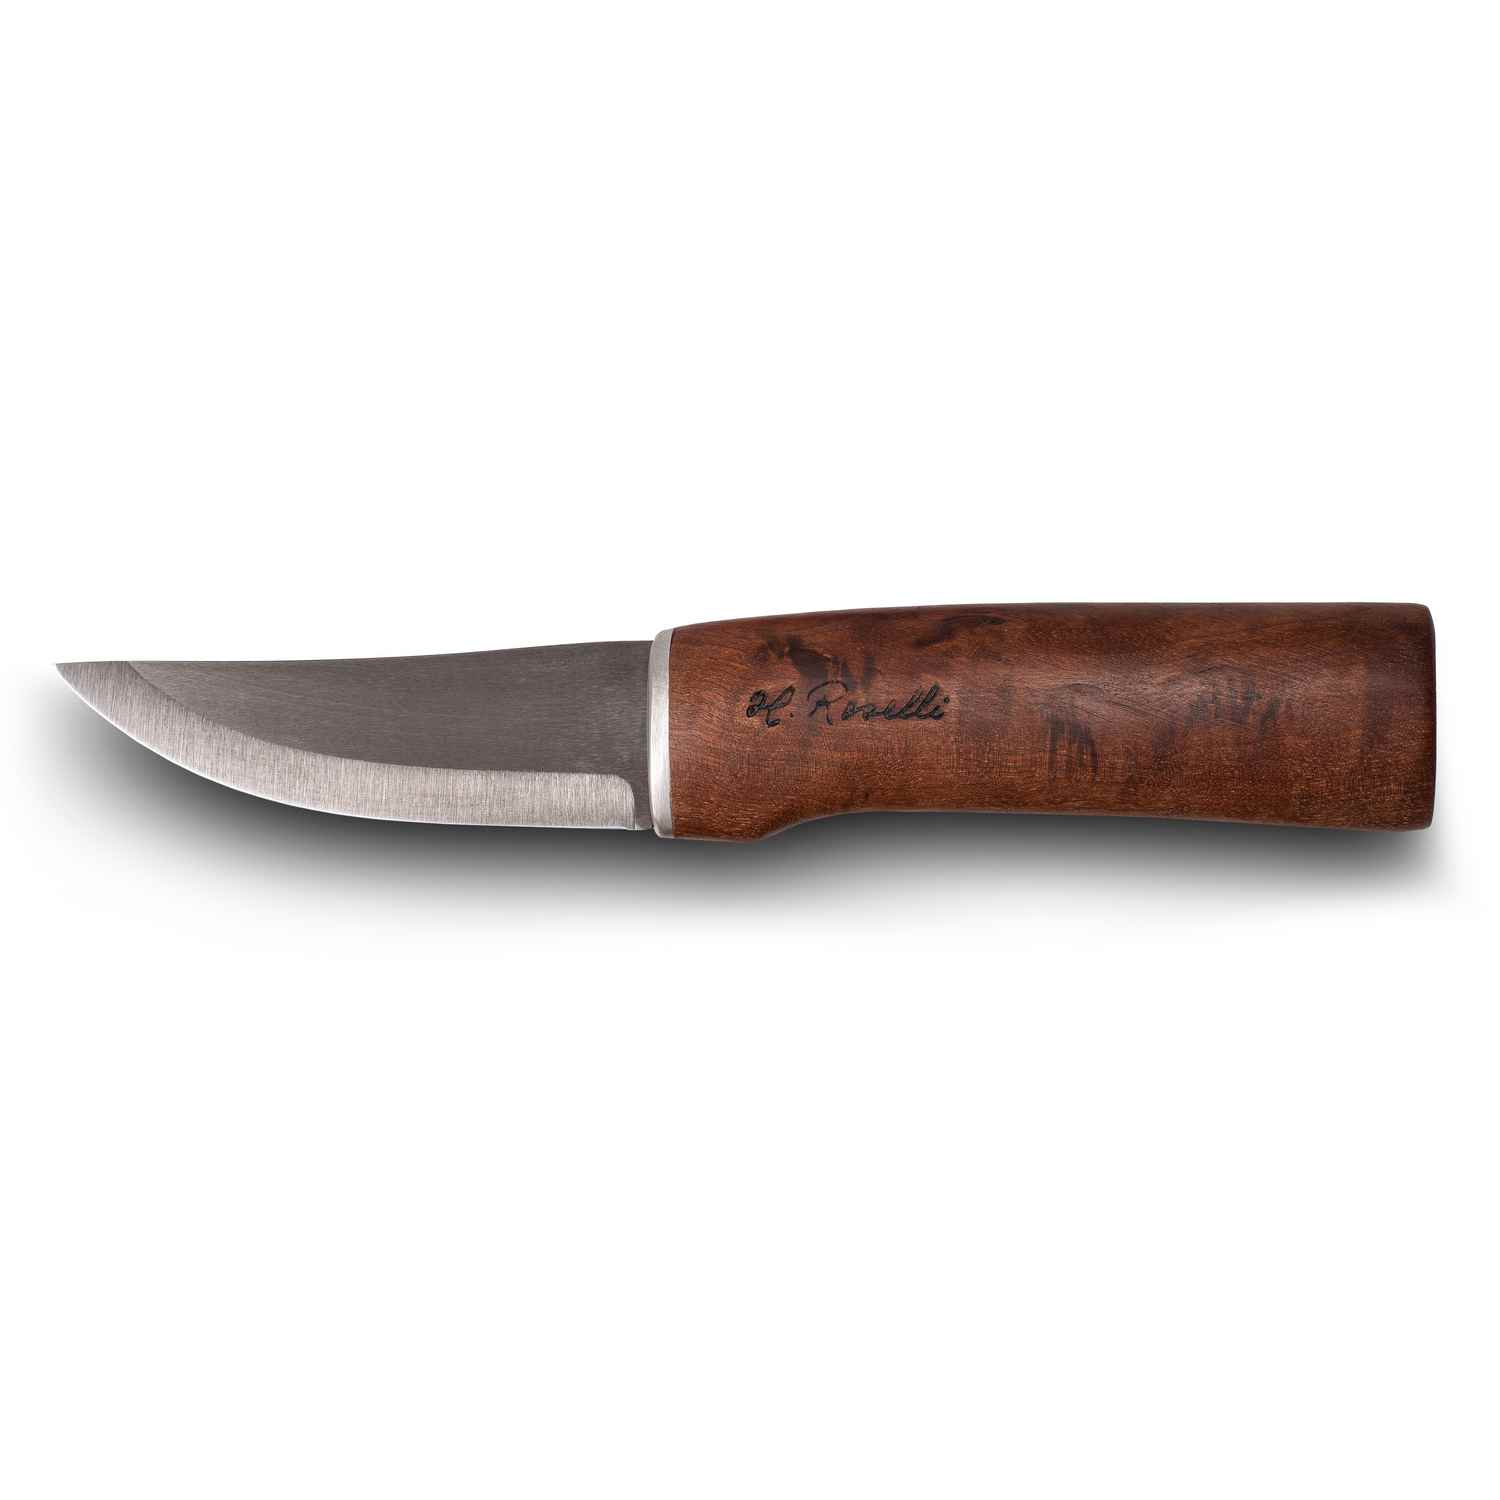 Roselli RW200 "UHC Hunting Knife"